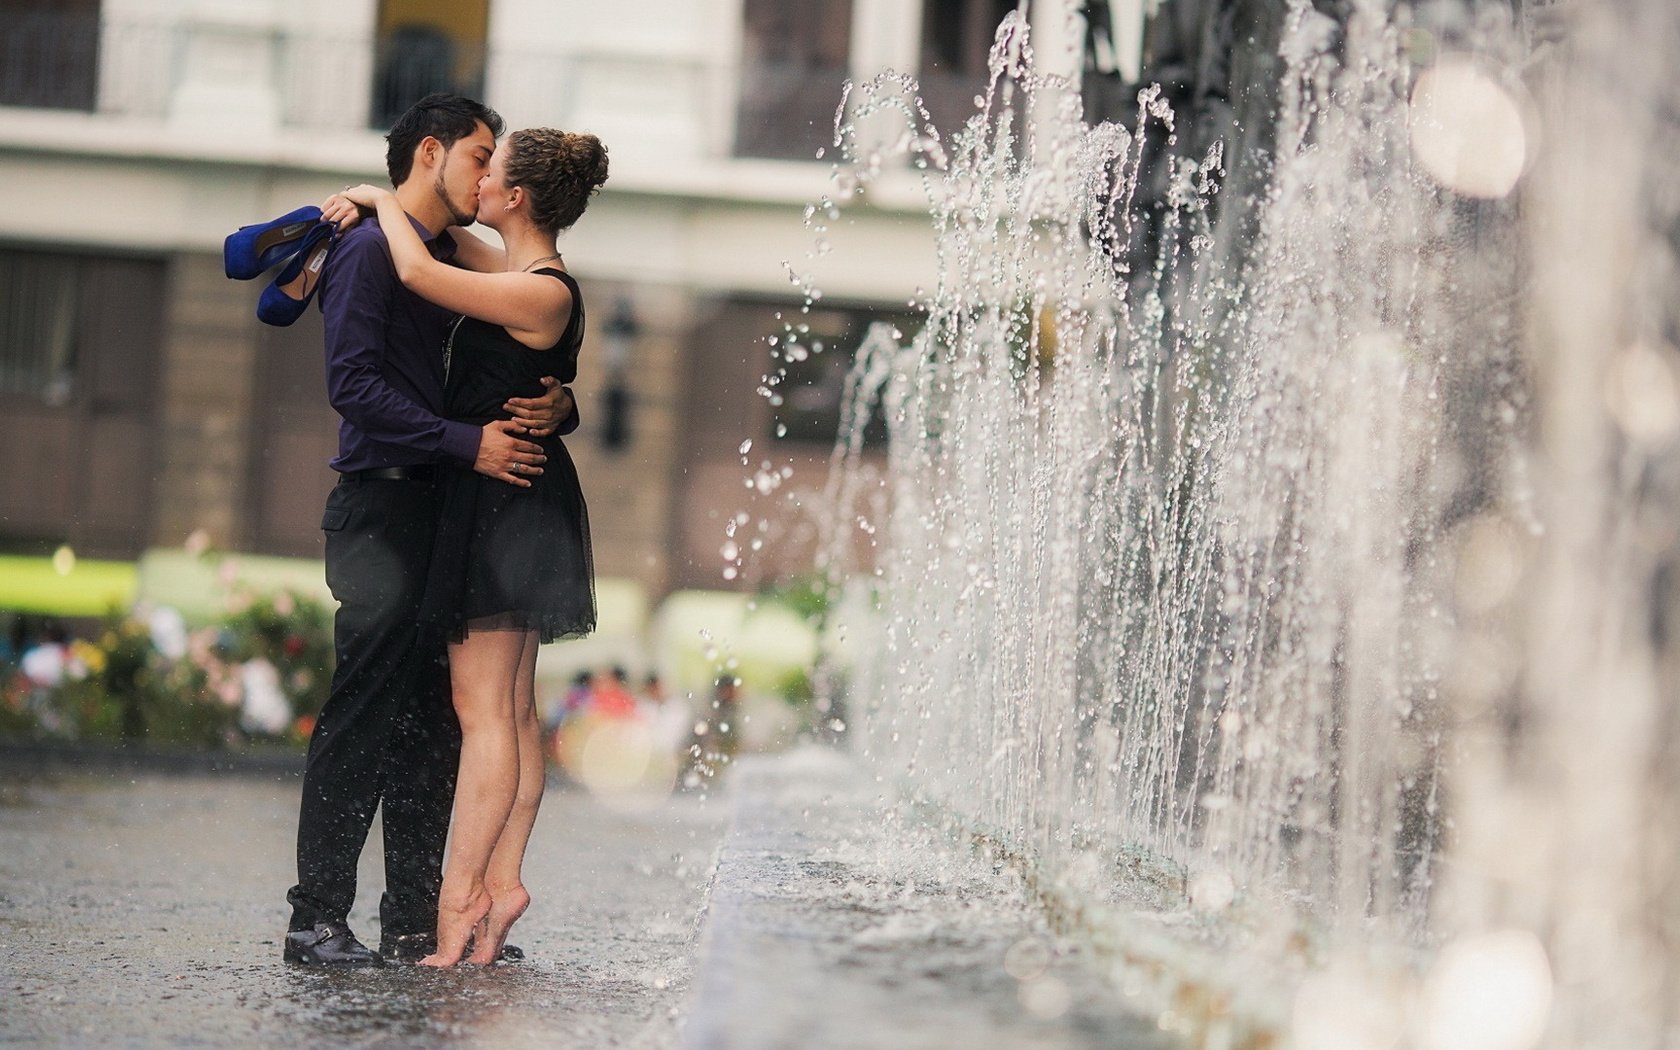 Девушка и парень в душе целуются фото